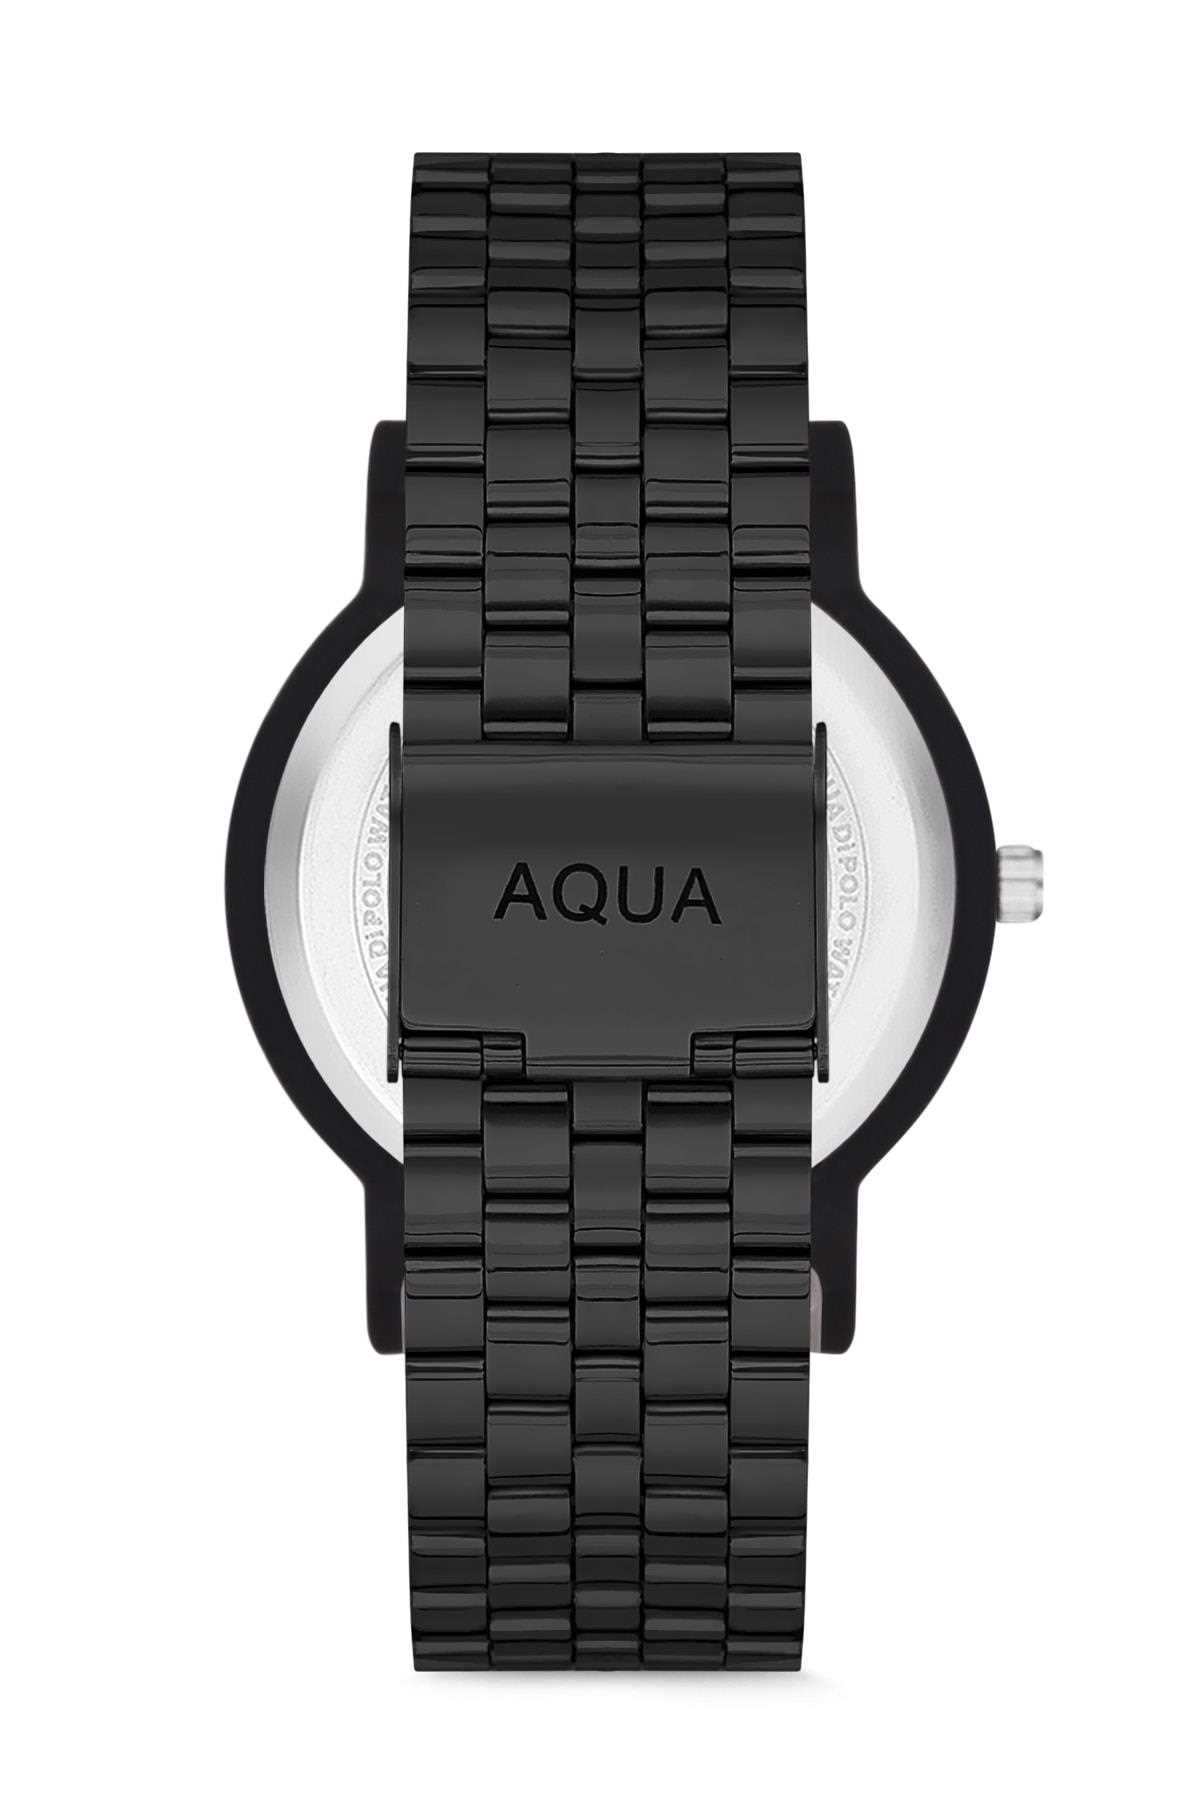 فروش انلاین ساعت زنانه مجلسی مارک Aqua Di Polo 1987 رنگ مشکی کد ty32043849